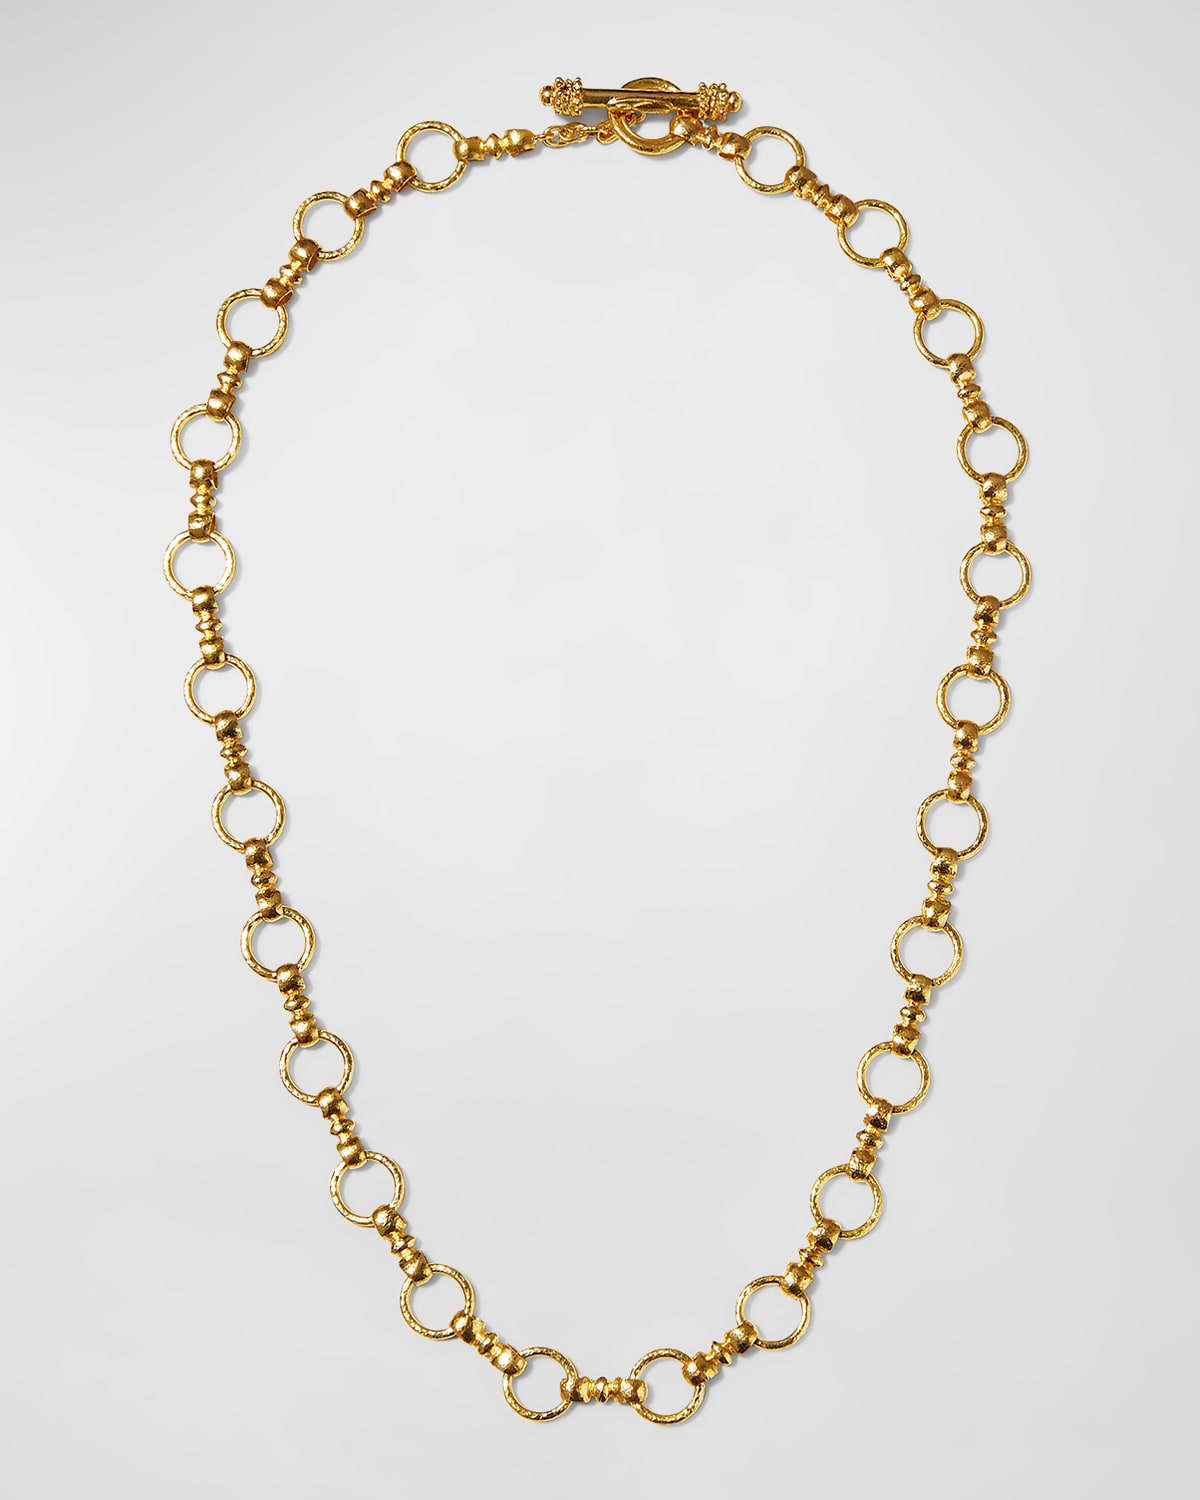 Elizabeth Locke Celtic Gold 19k Link Necklace, 21"L